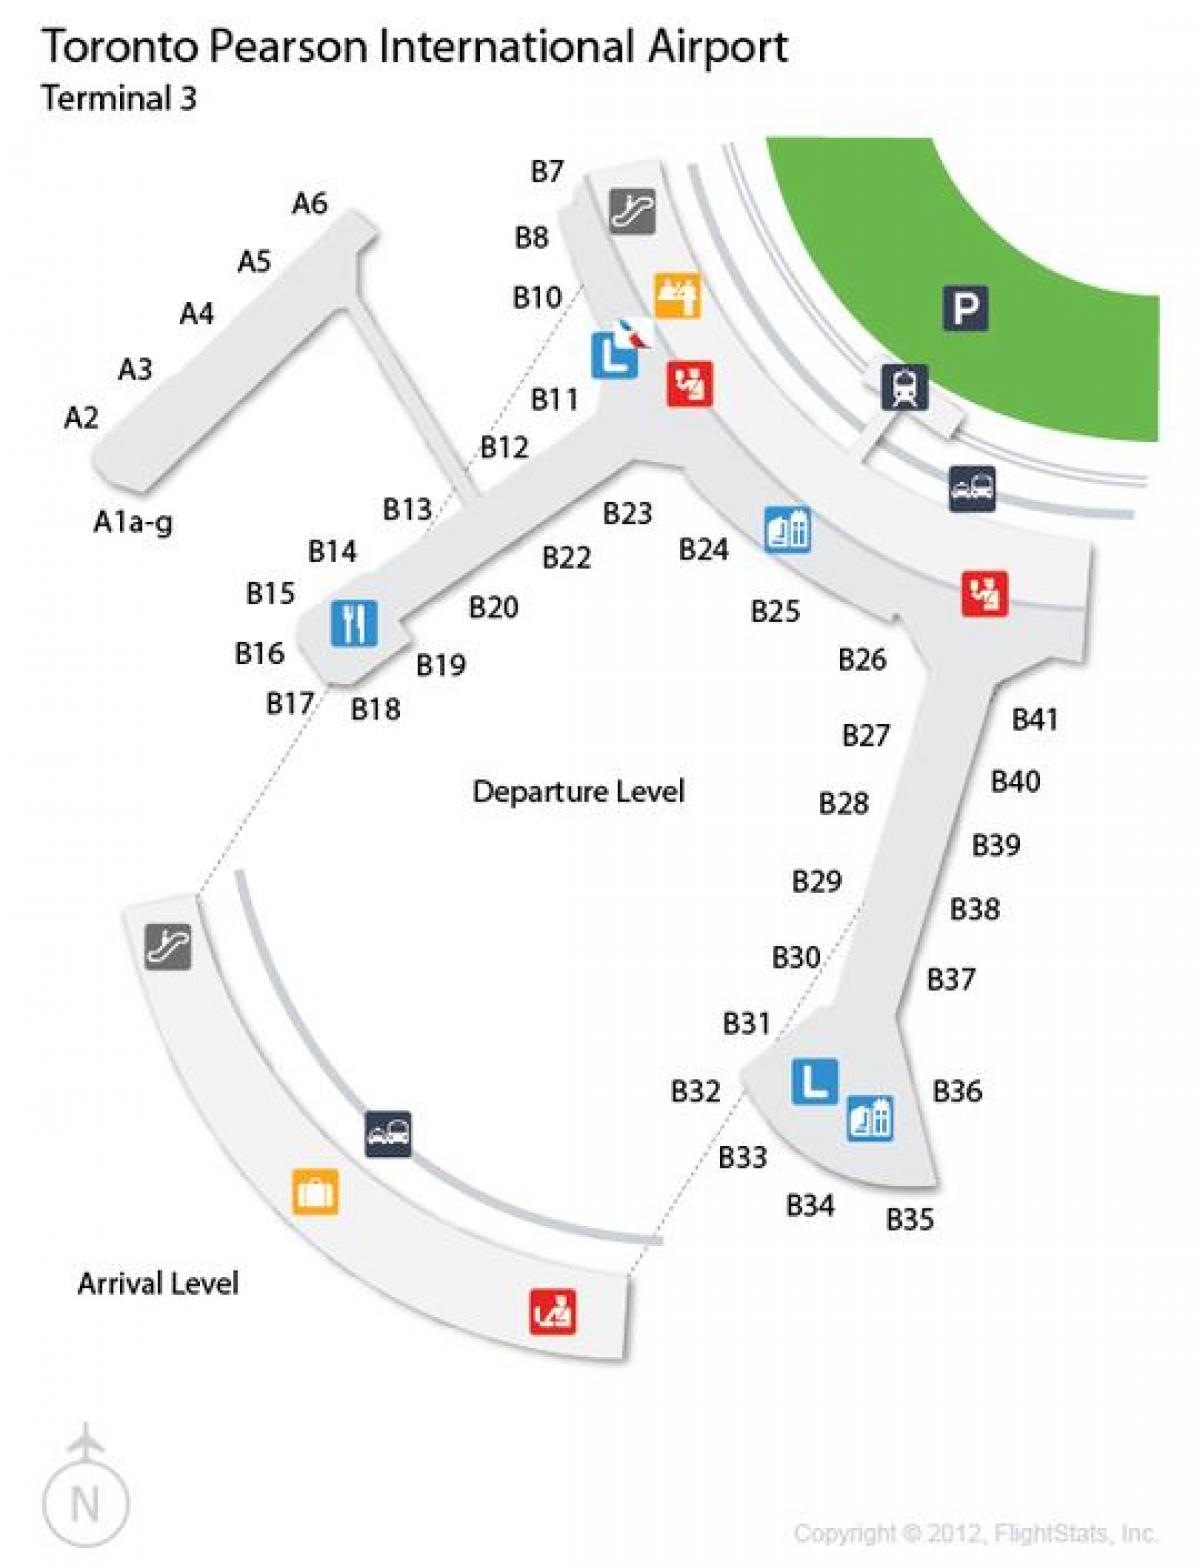 แผนที่ของโตรอนโตเพียร์สันสนามบินมาถึงในระดับเทอร์มินัล 3